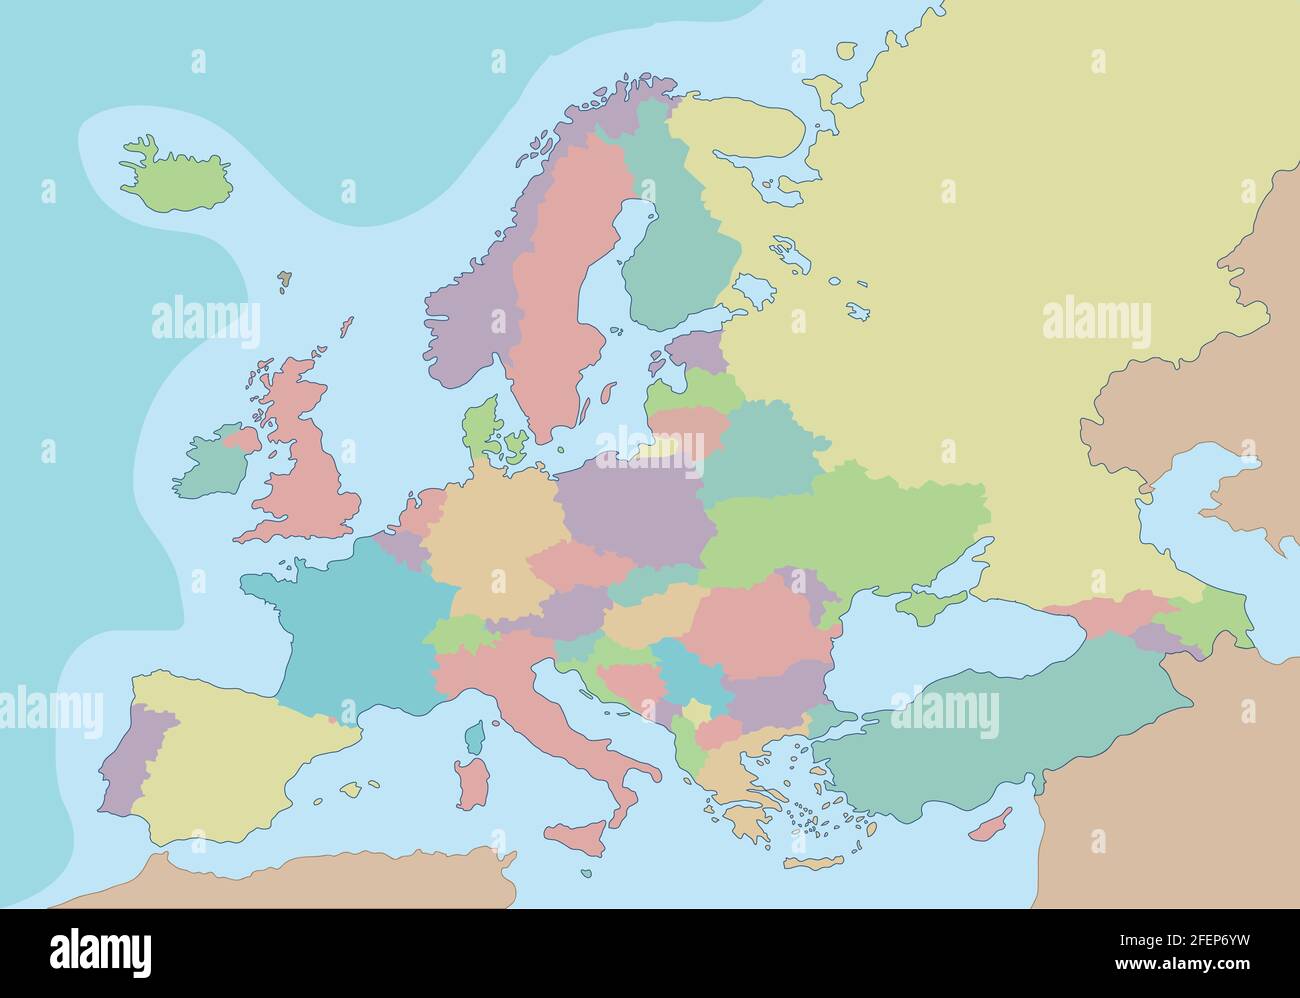 Carte politique de l'Europe avec différentes couleurs pour chaque pays. Illustration vectorielle. Illustration de Vecteur